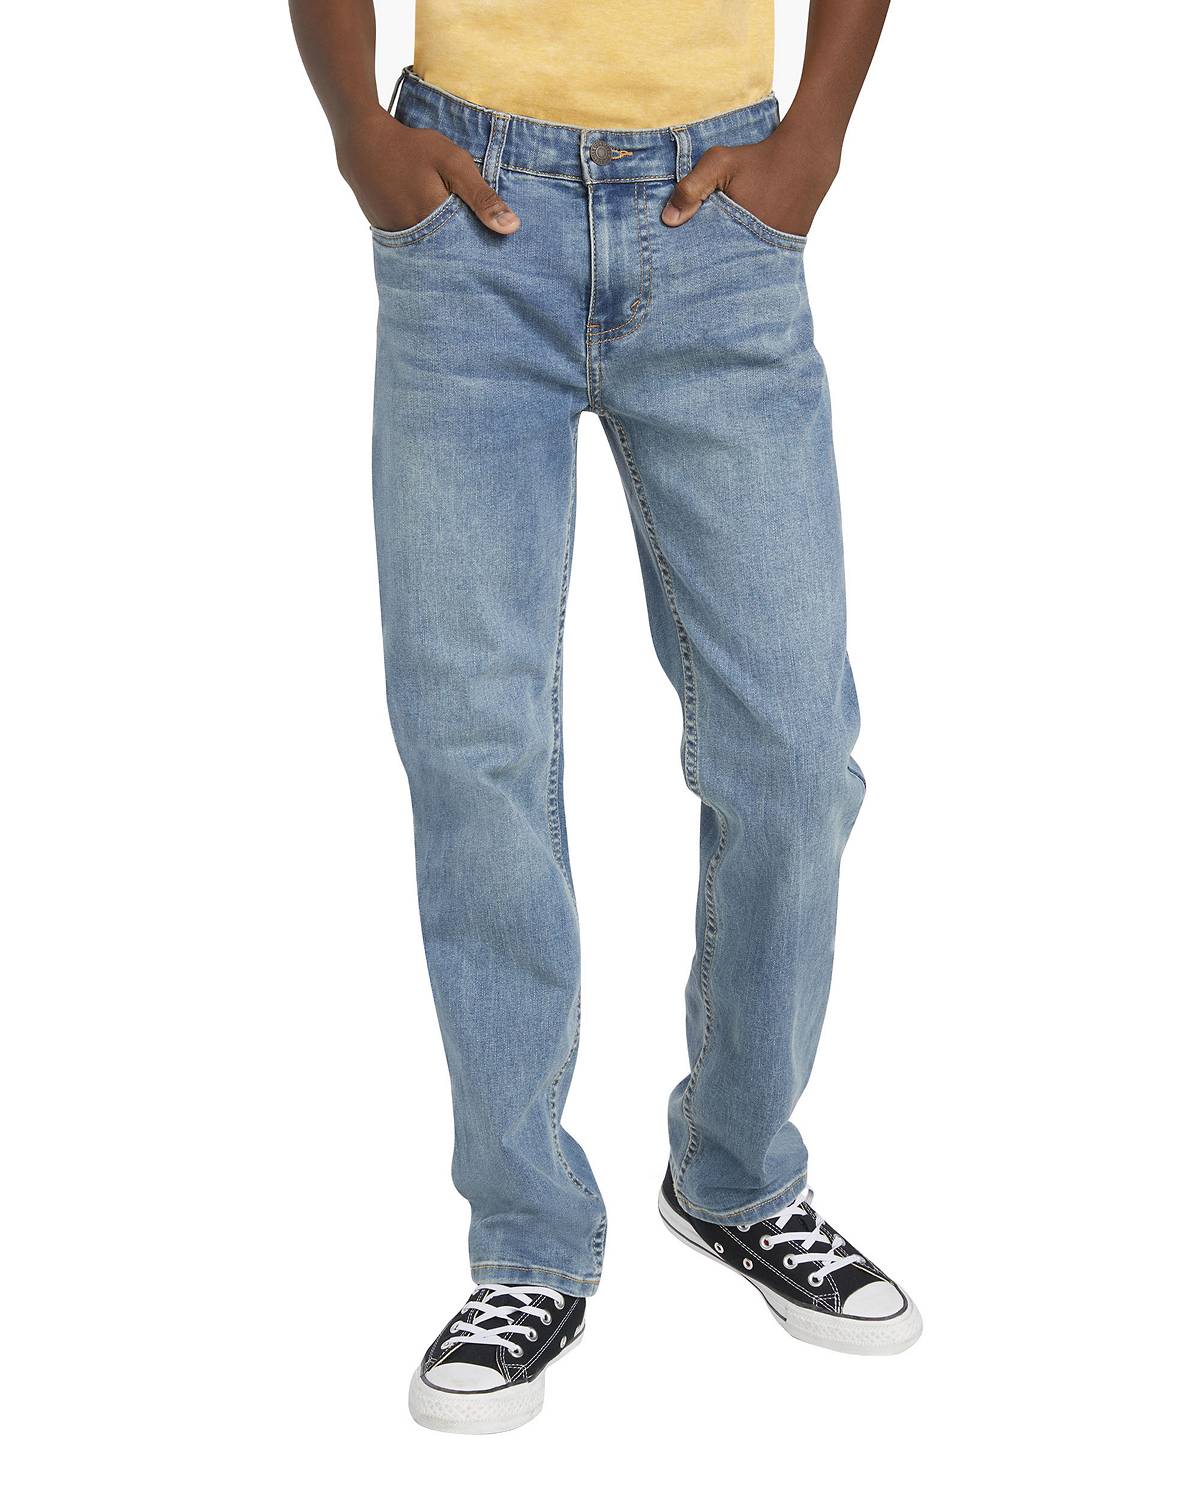 Boy wearing 502™ Taper Jeans